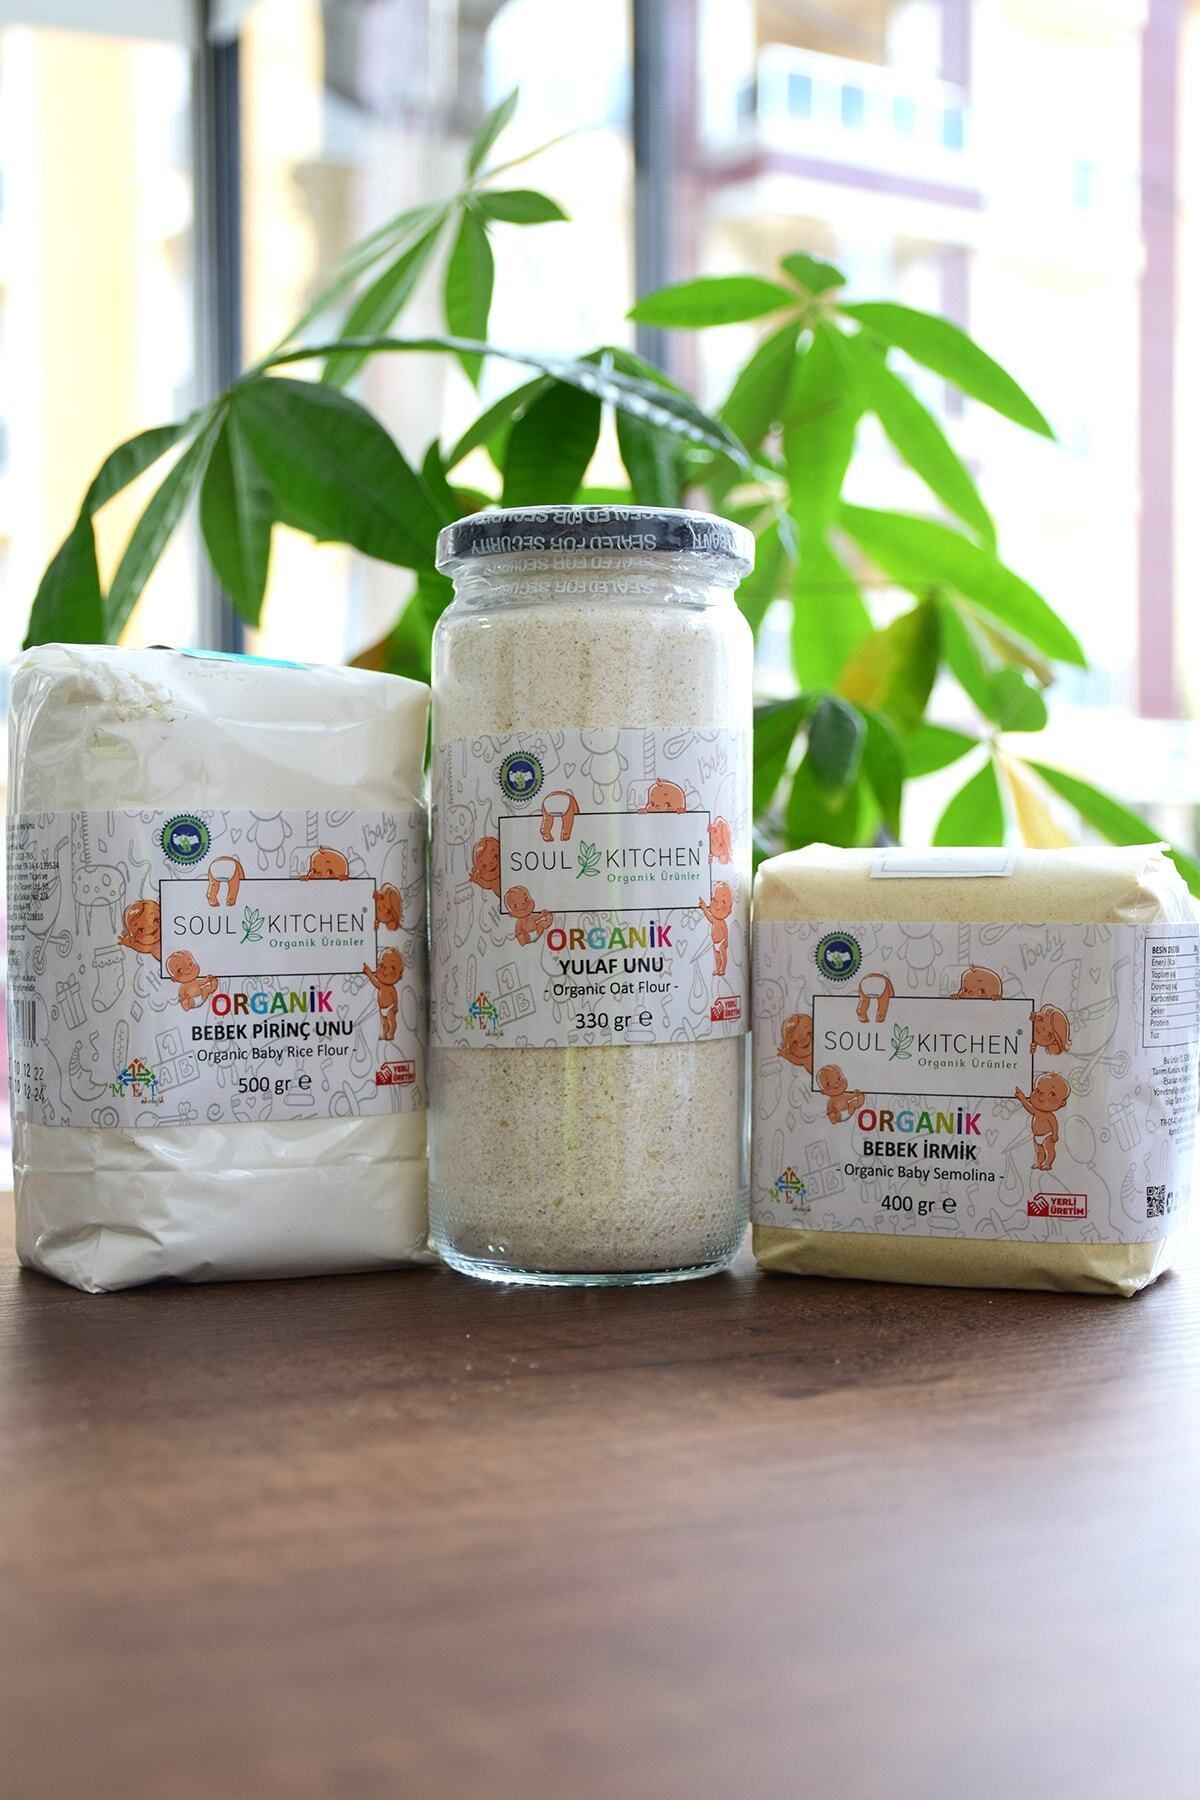 Soul Kitchen Organik Ürünler Organik Bebek Ek Gıda Paketi 6 Ay - Irmik 400 gr - Pirinç Unu 500 gr - Tam Yulaf Unu 330 gr